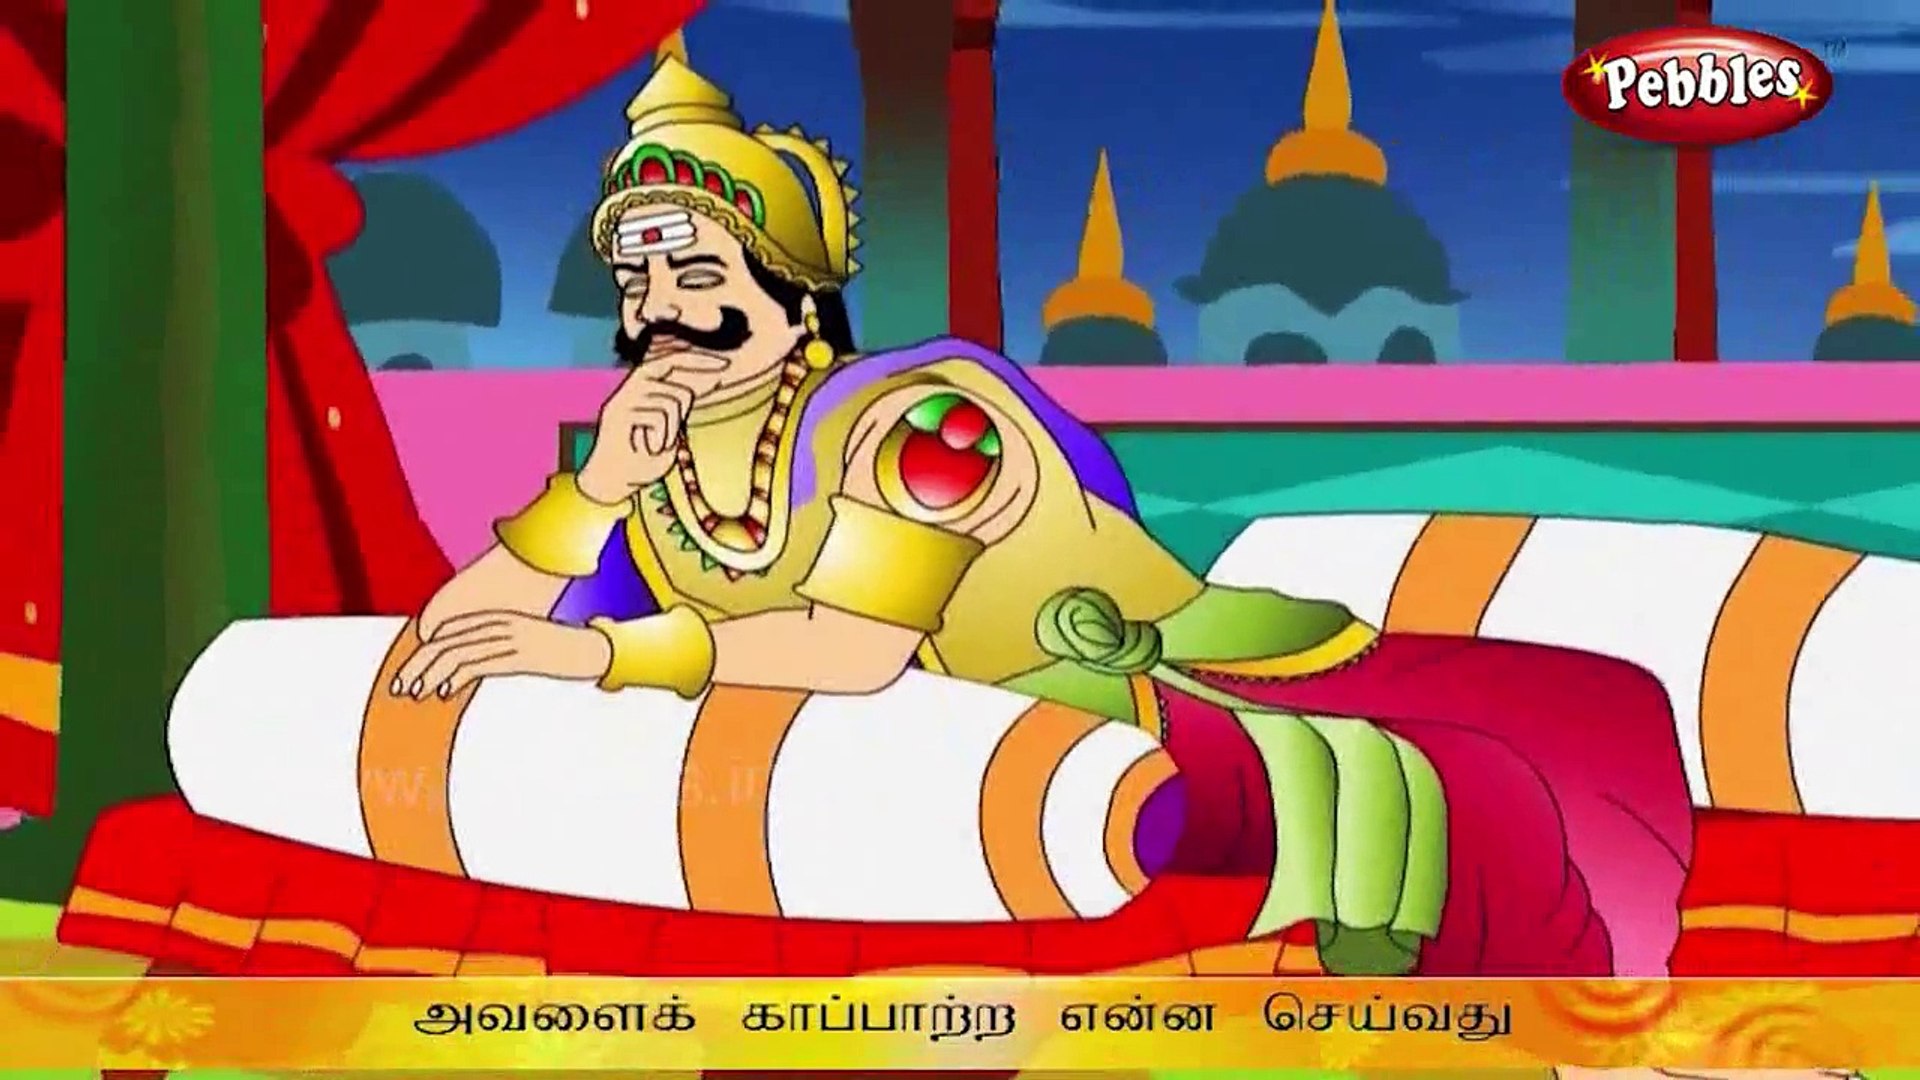 ஐயப்பன் கதை - Ayyappan Tamil Stories - video Dailymotion